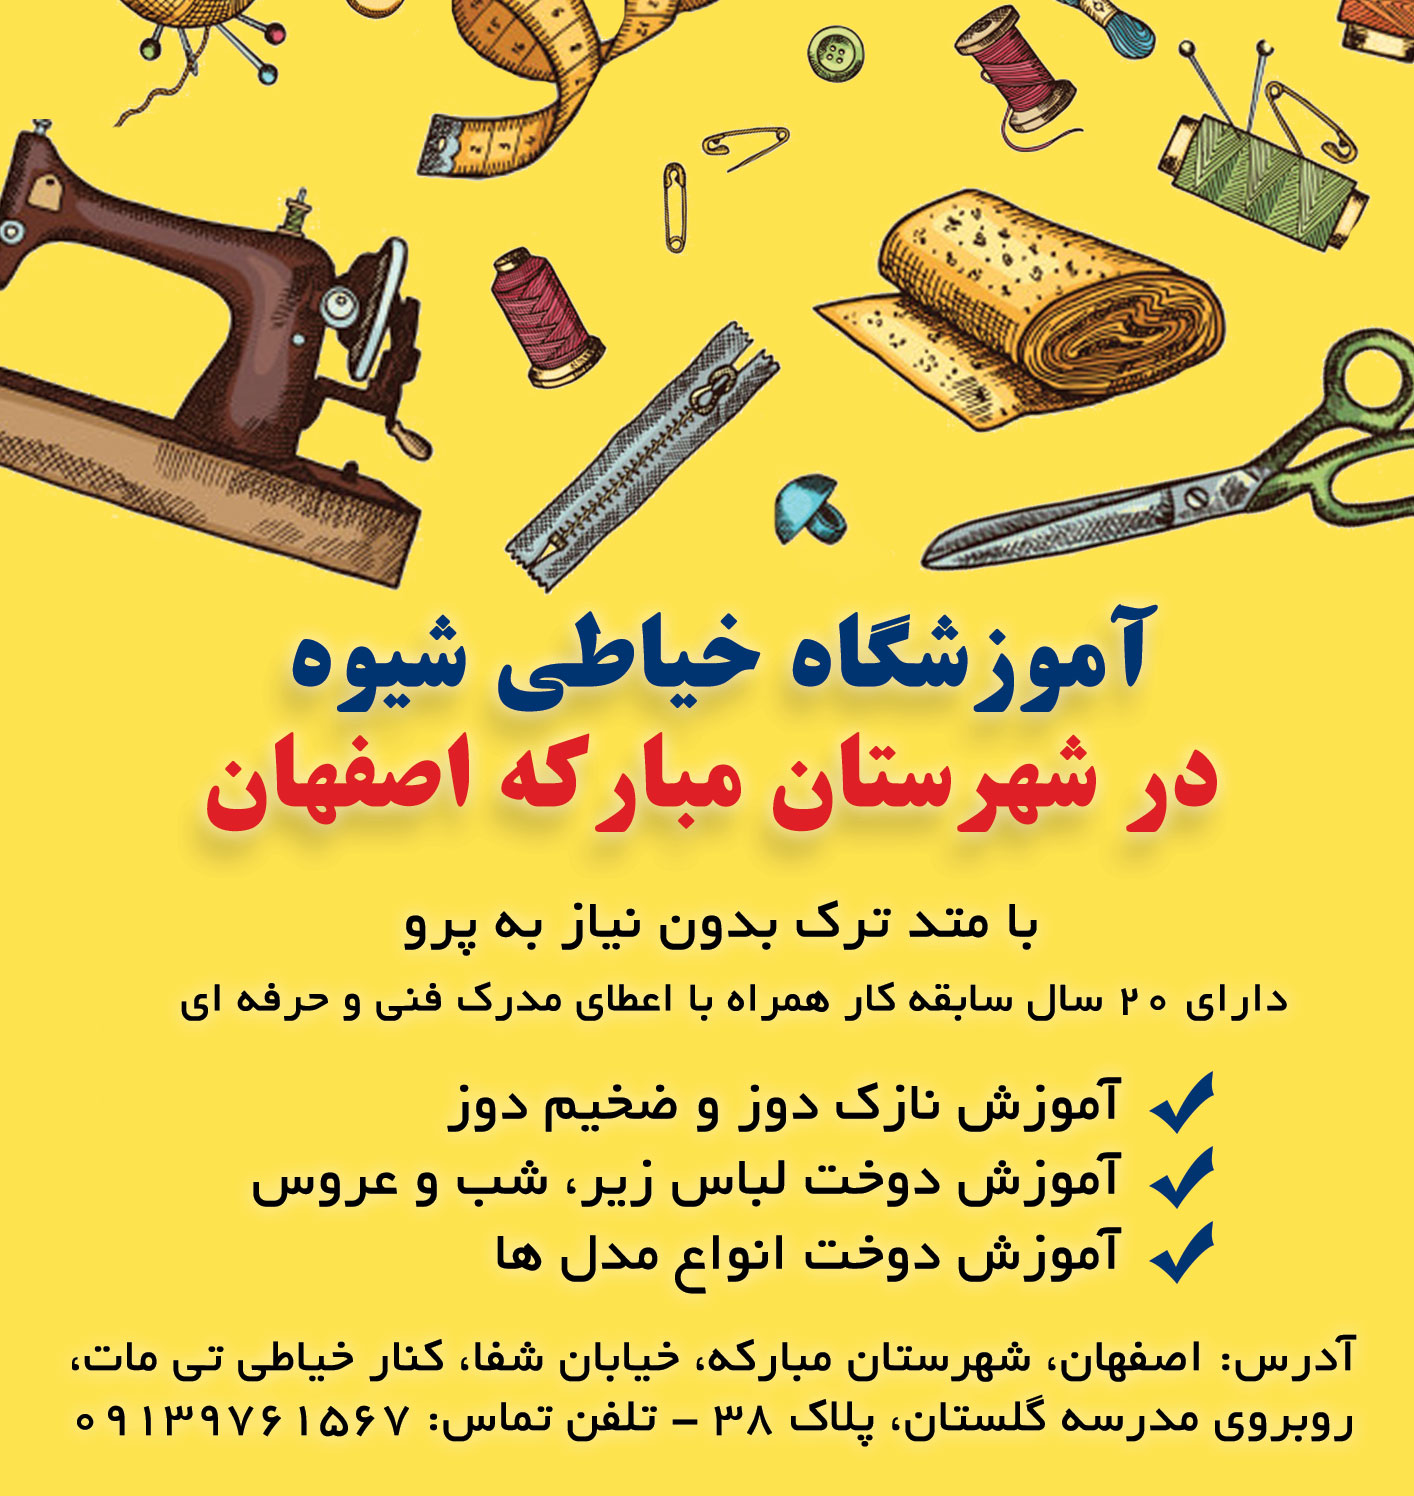 آموزشگاه خیاطی مبارکه اصفهان